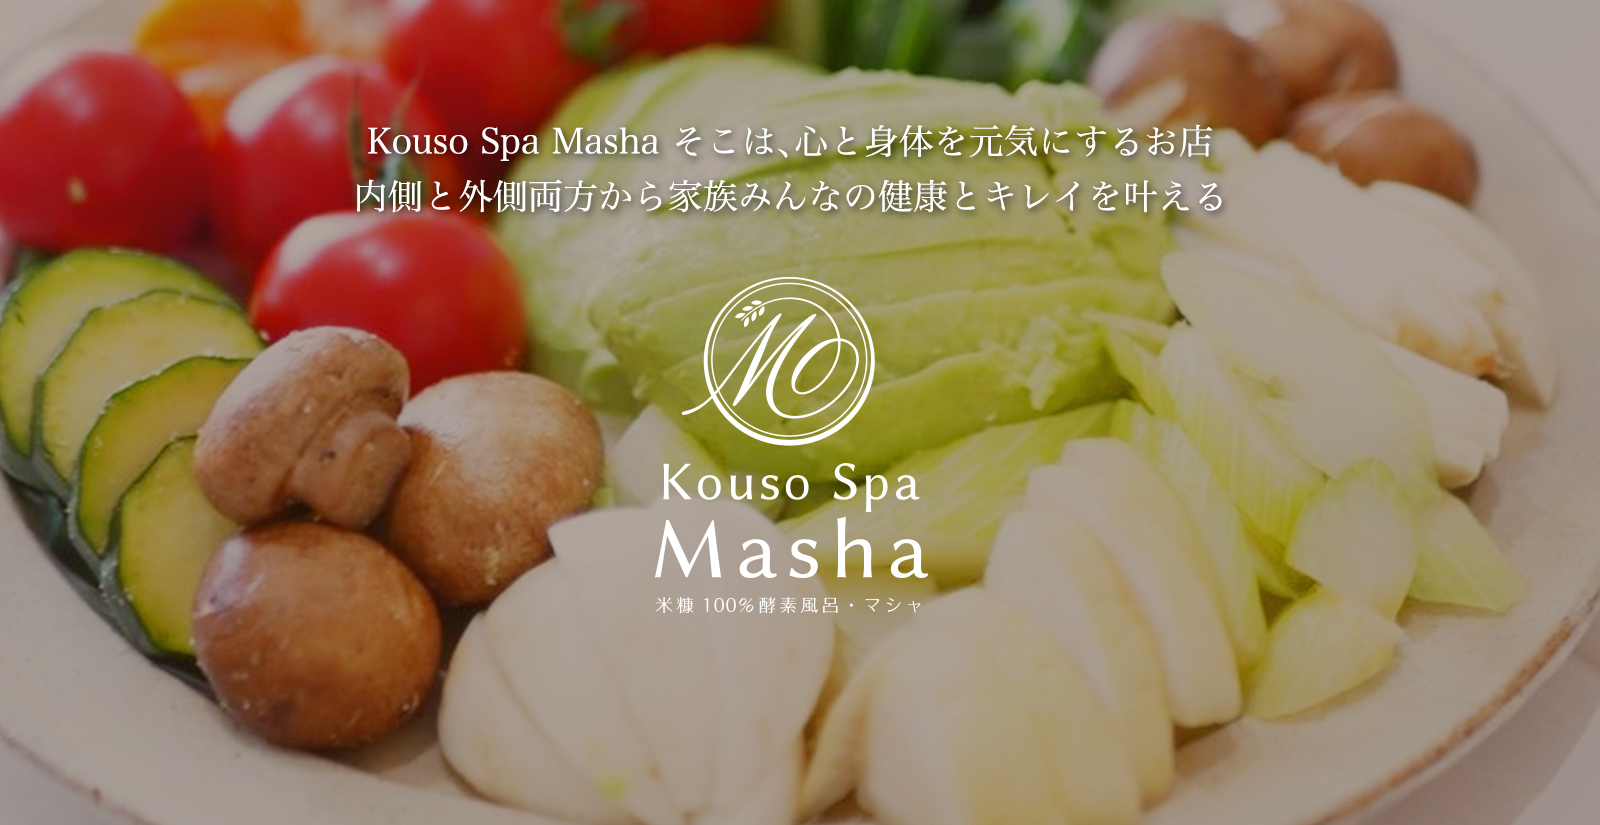 【KousoSpaMasha】米ぬか100%酵素風呂&エステ&酵素料理喫茶店